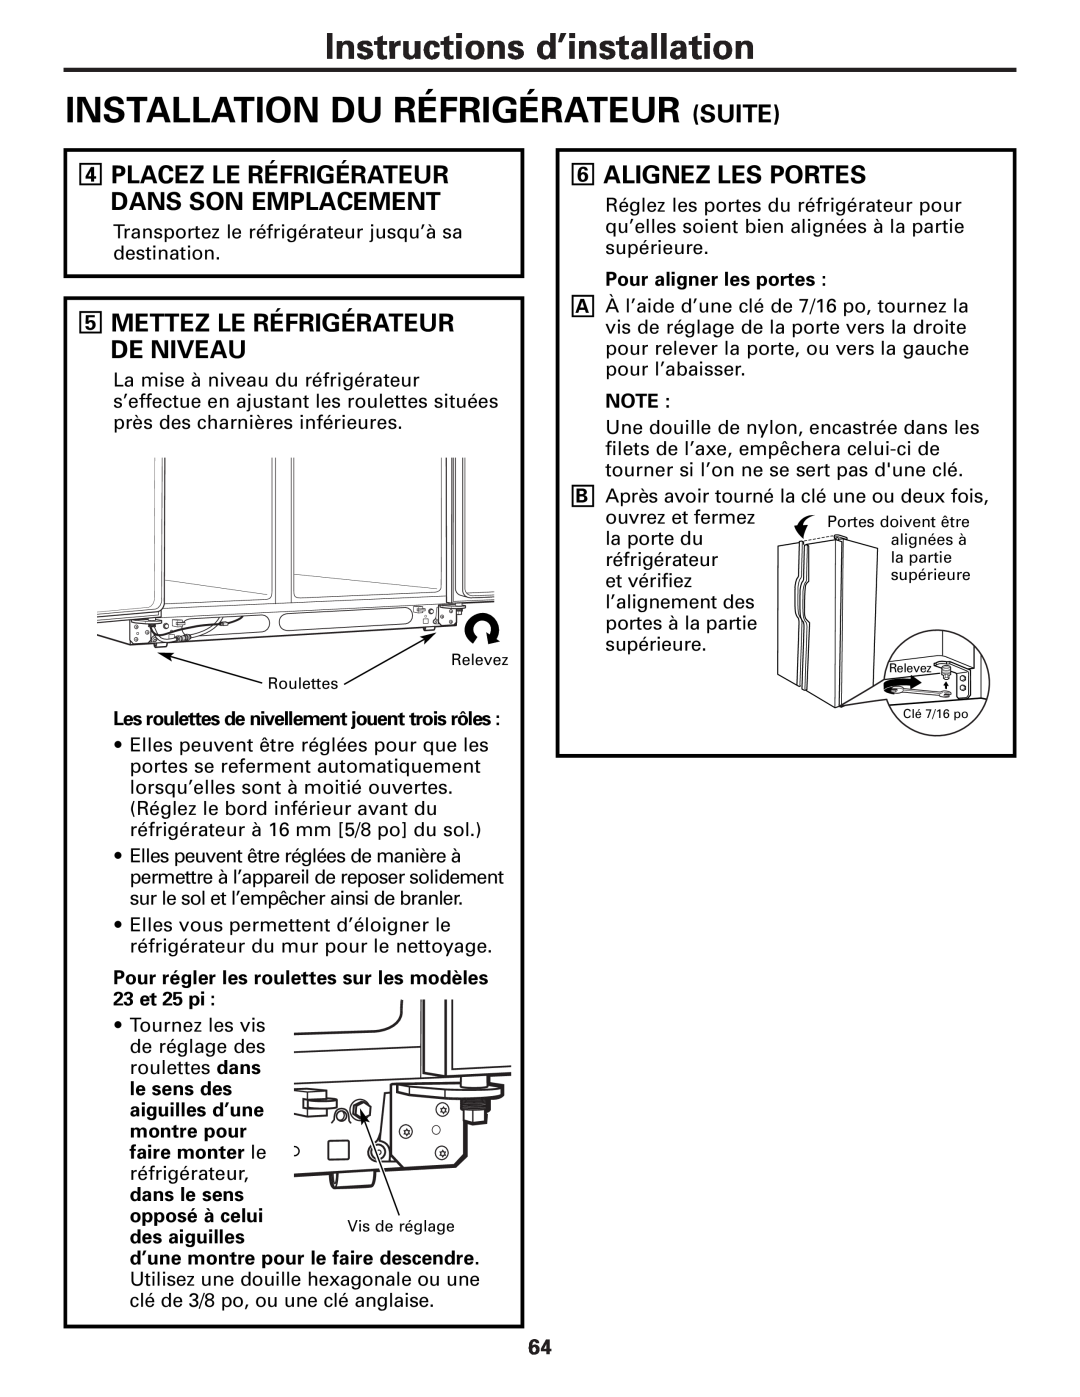 GE MODELS 23 AND 25 Instructions d’installation INSTALLATION DU RÉFRIGÉRATEUR SUITE, Alignez Les Portes 